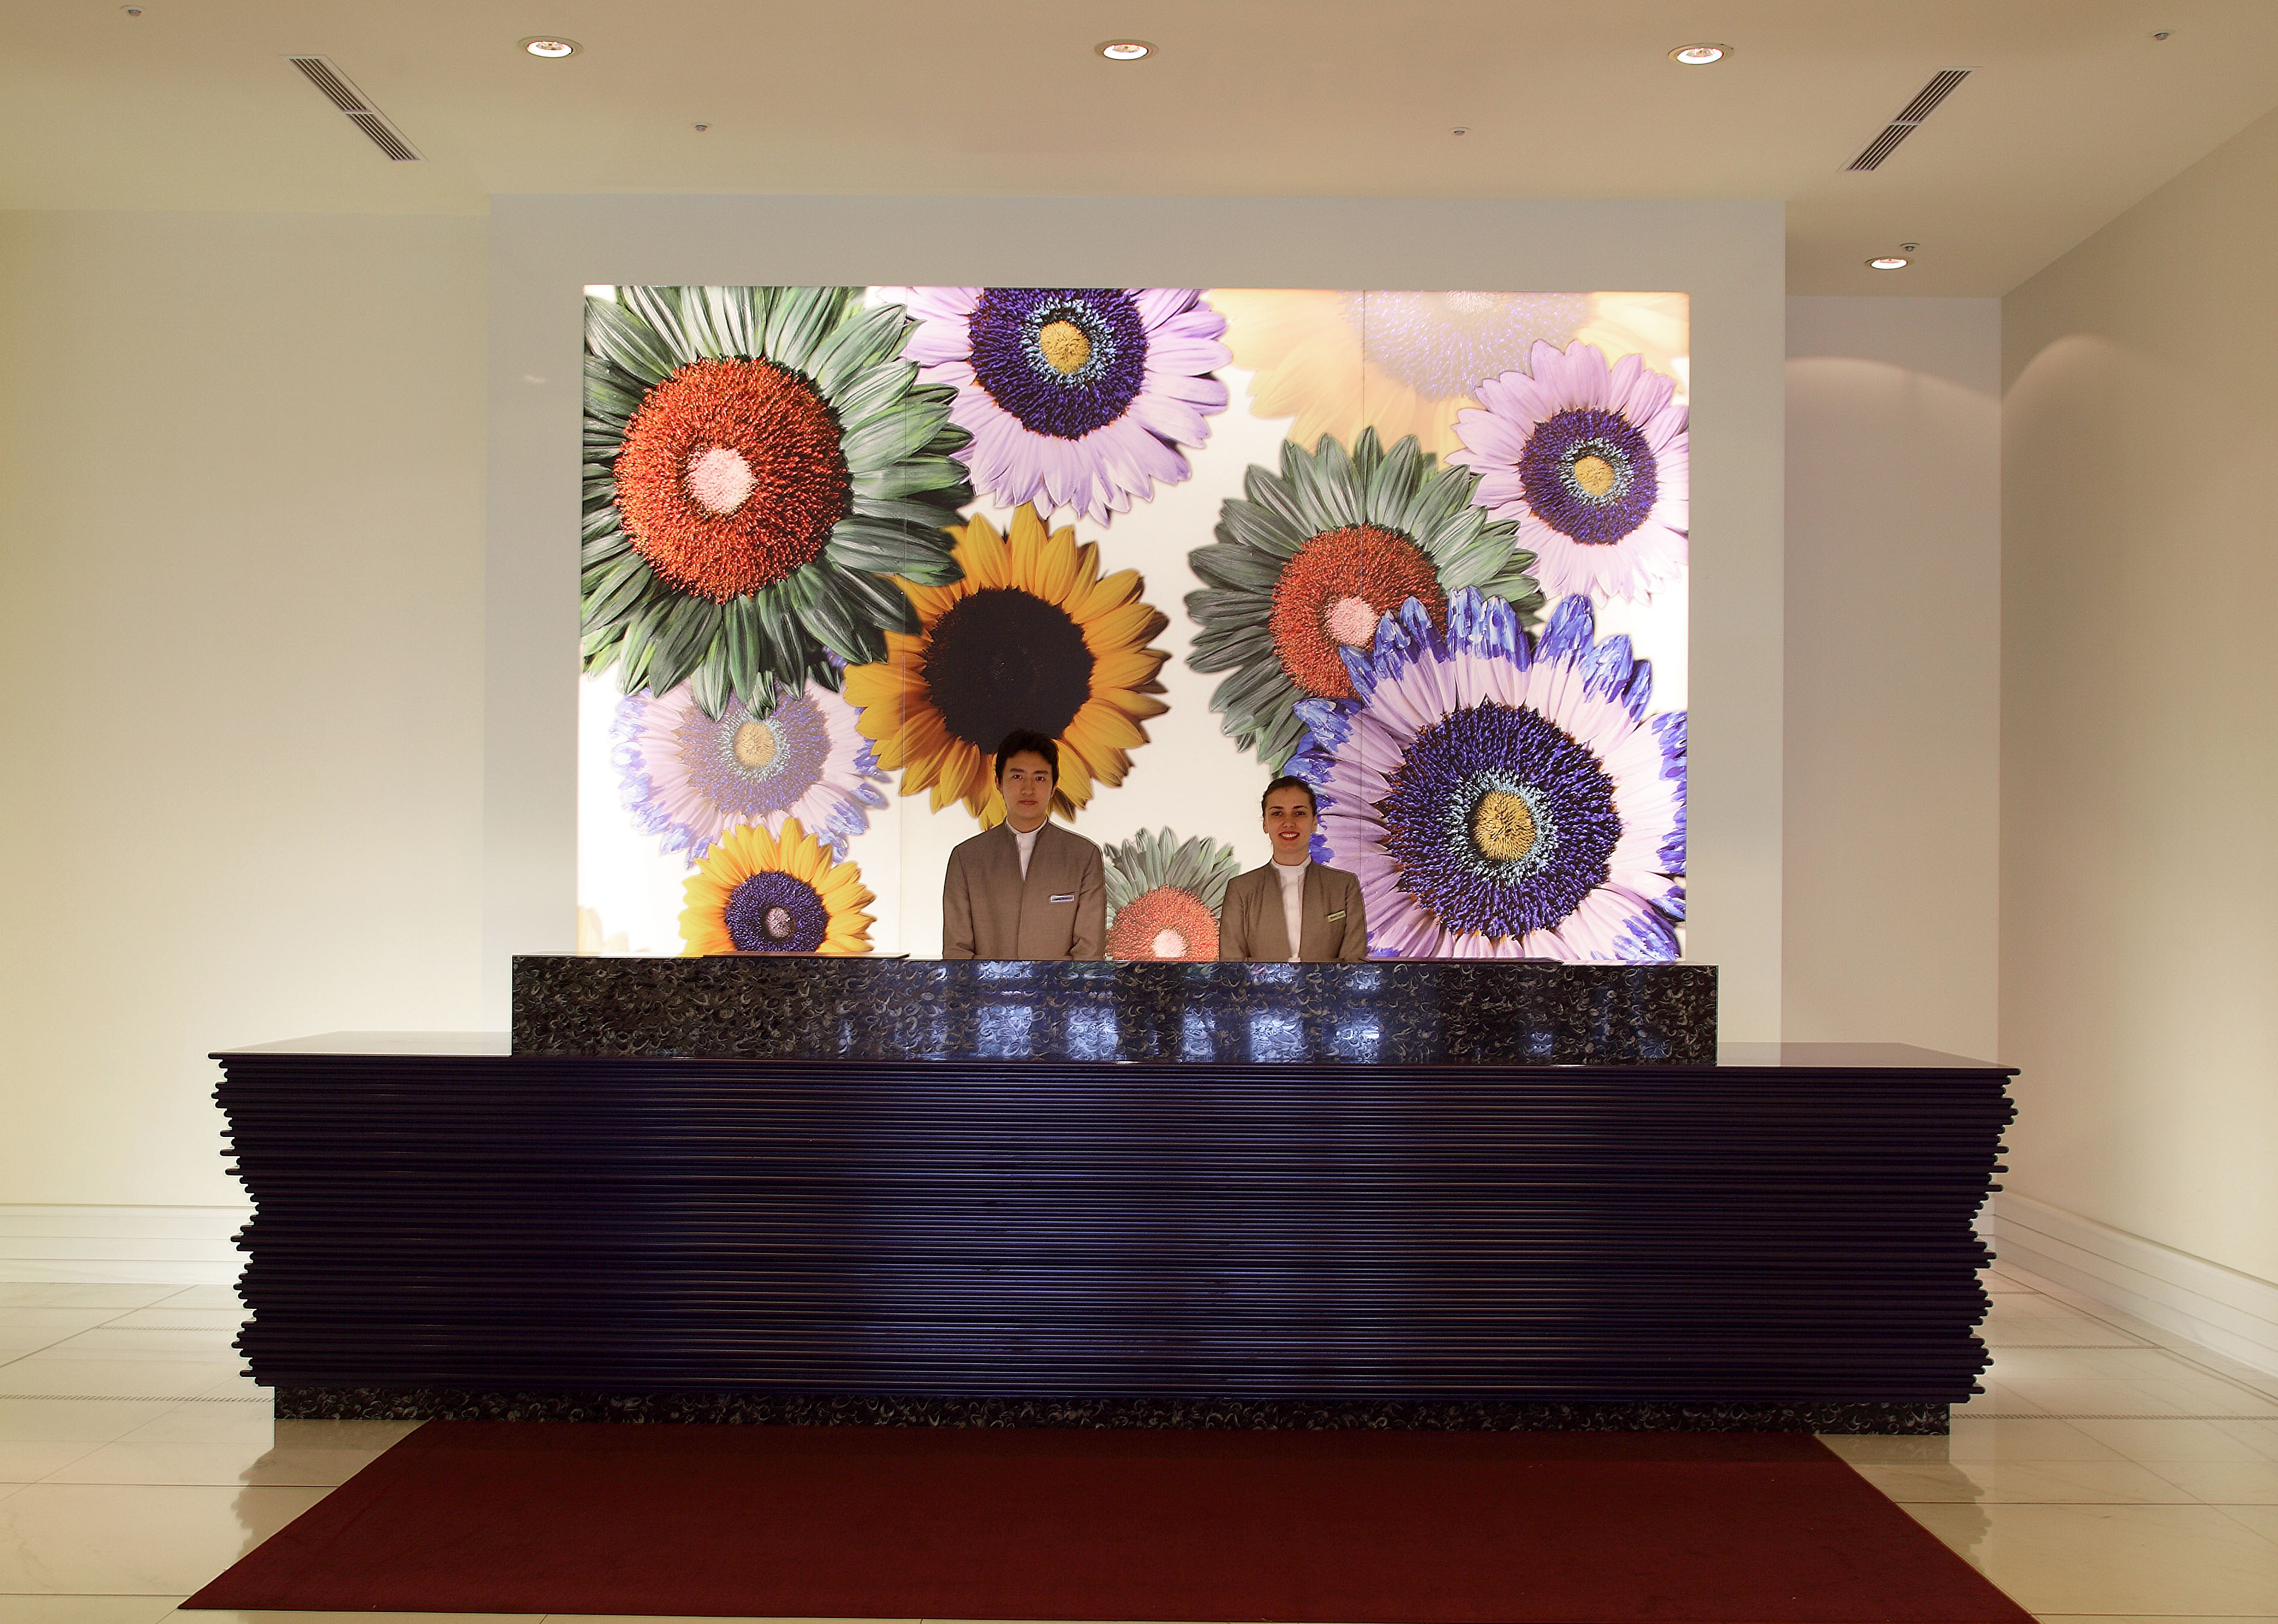 維多麗亞酒店櫃檯大廳
提供貼心、溫暖、專業的服務。